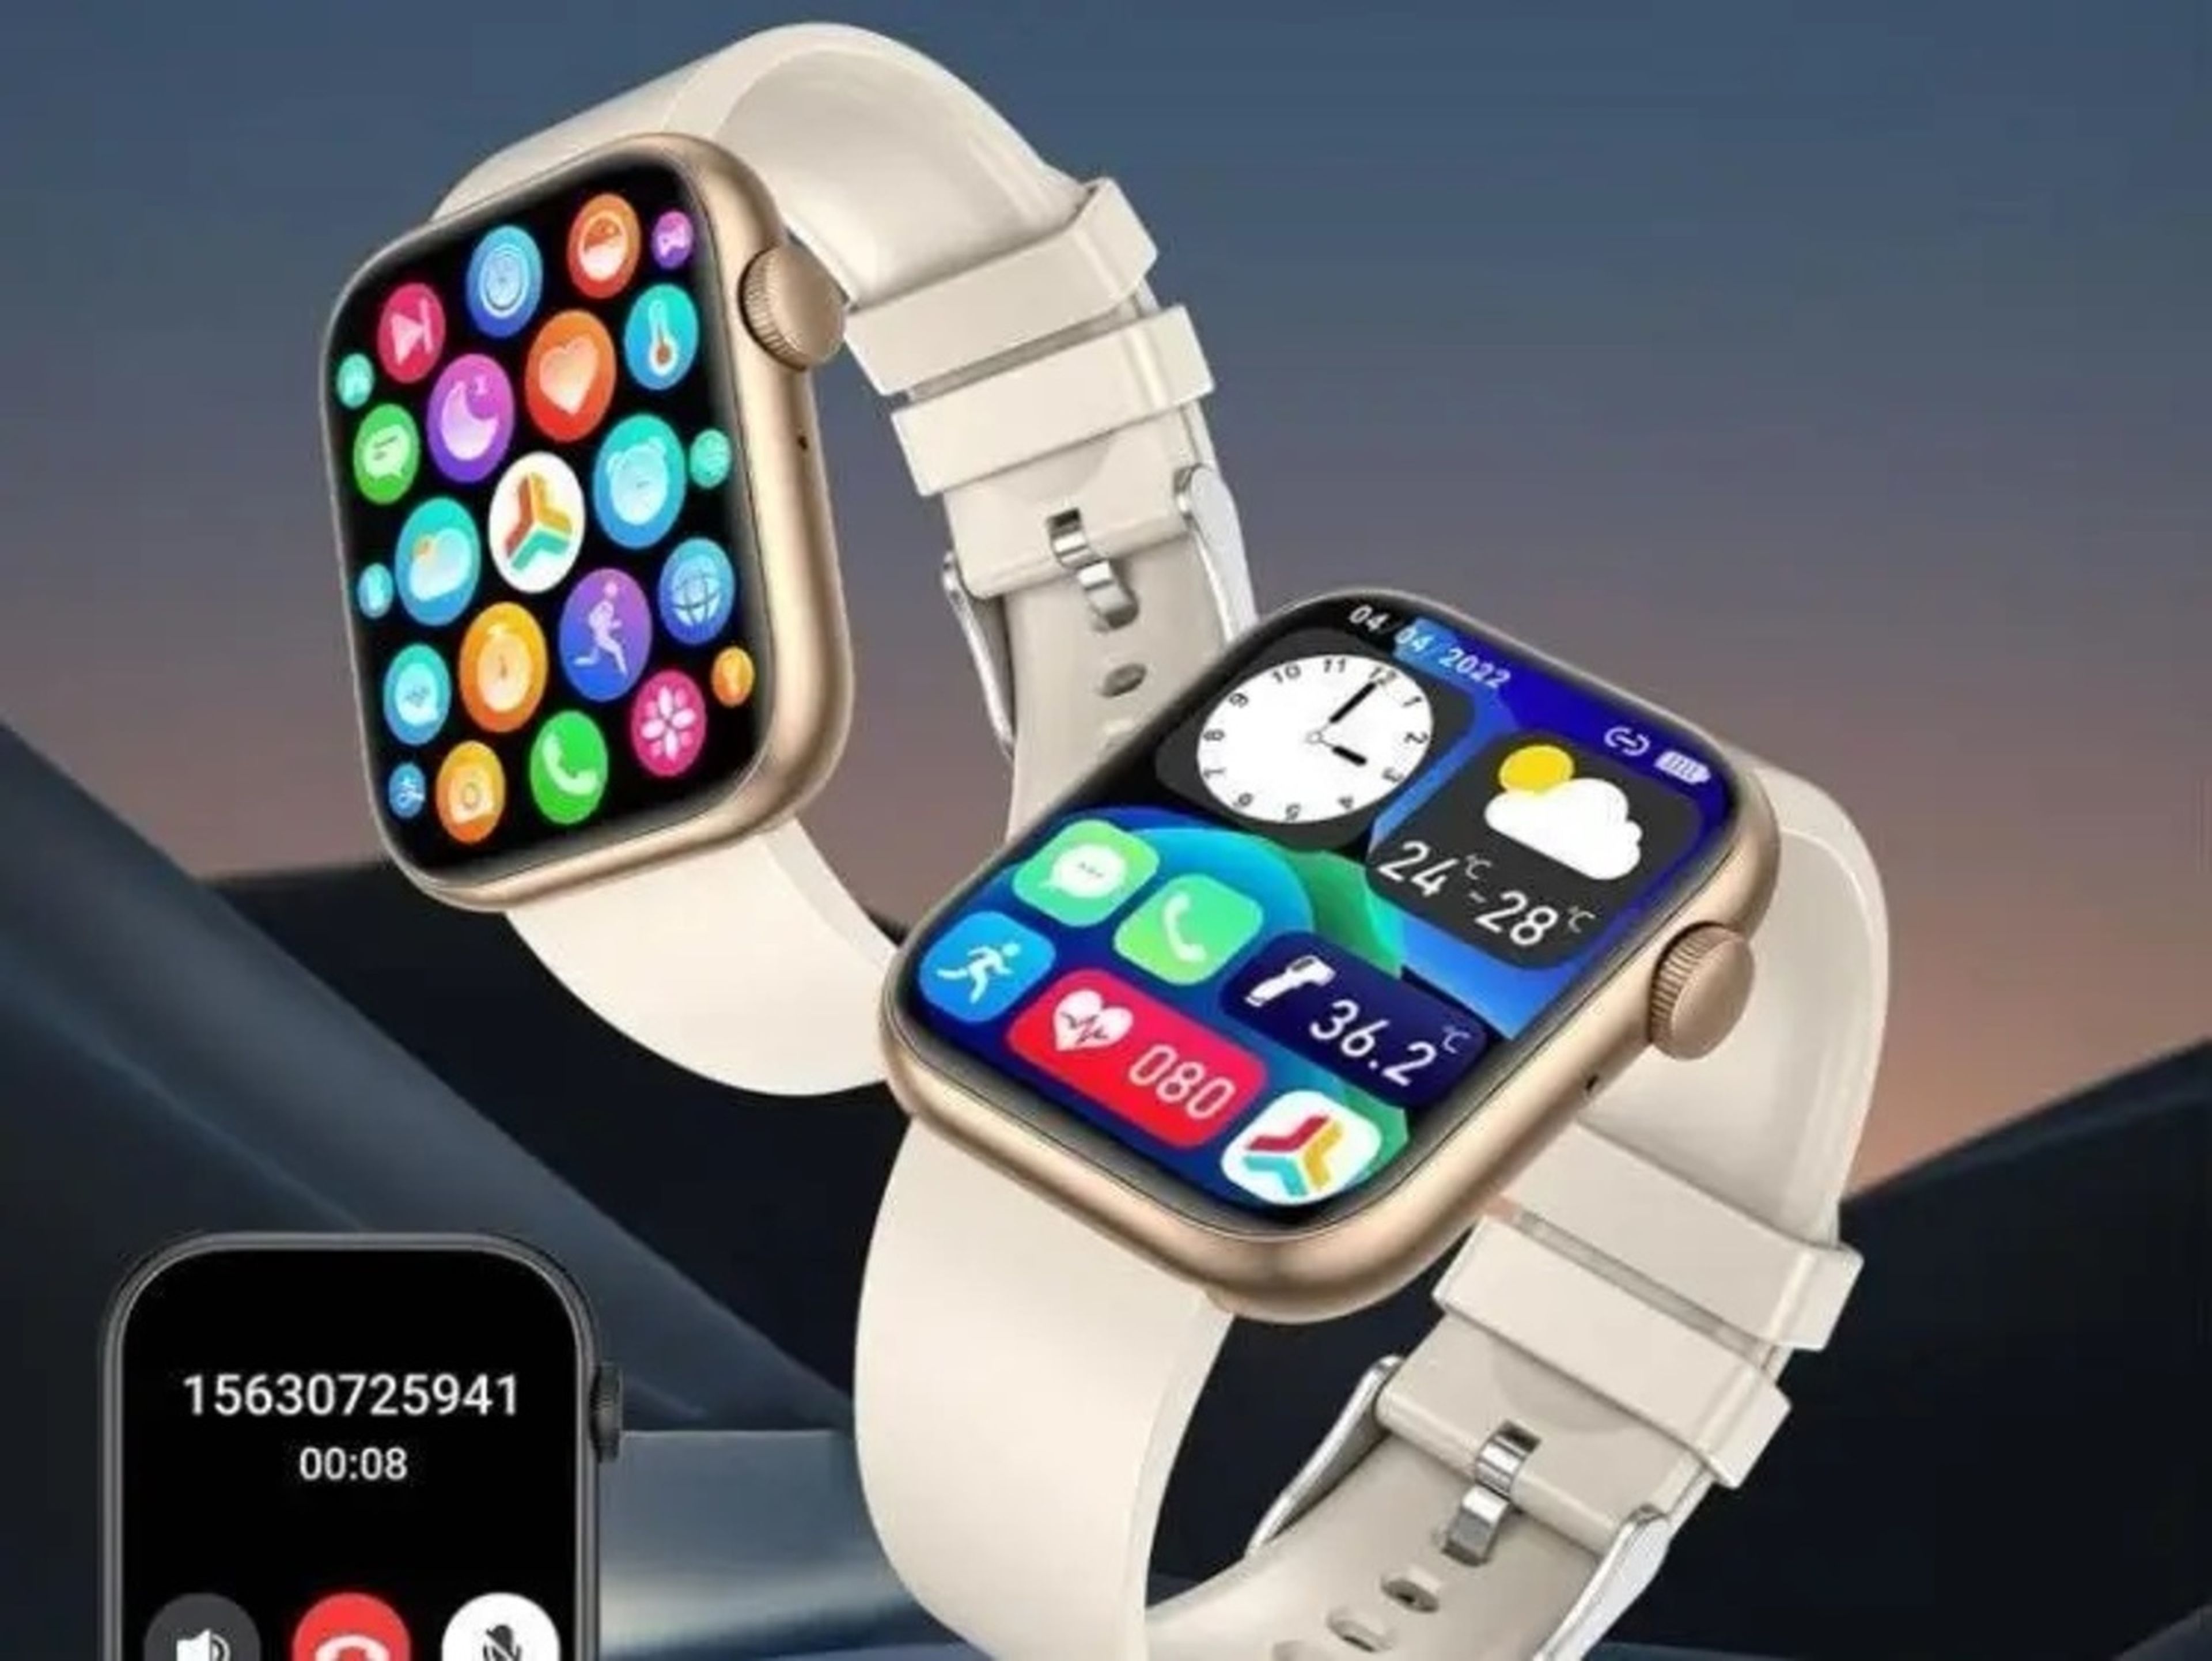 Un influencer subió un vídeo a TikTok promocionando "la venta flash más alocada" de un "Apple Watch viral" por poco menos de 8 euros.